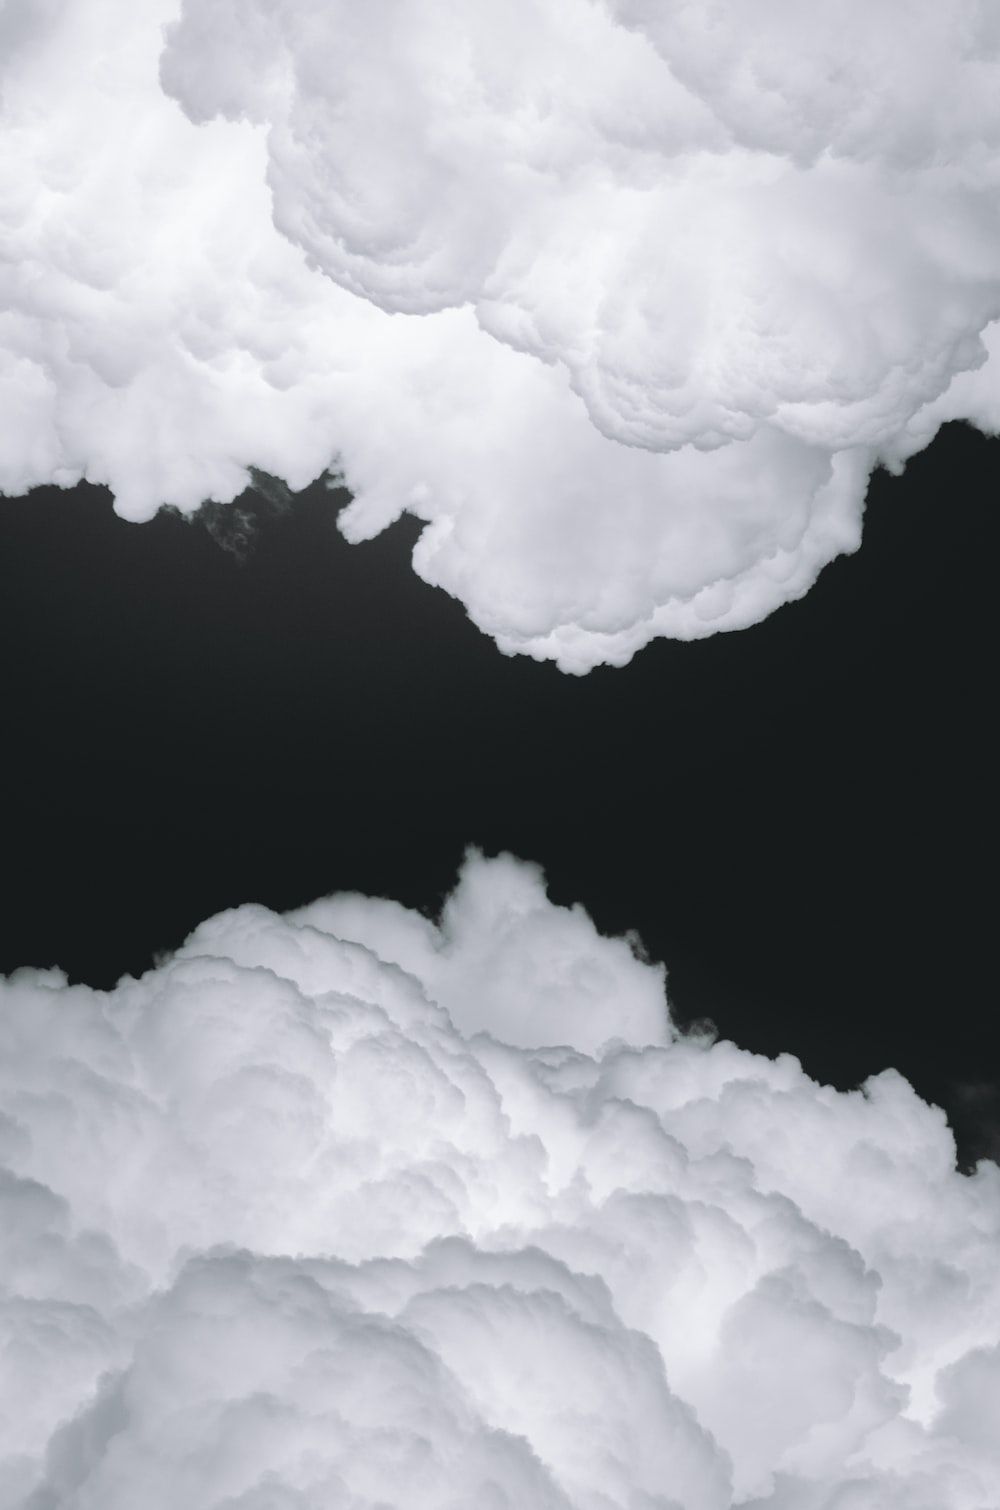  Grau Weiß Hintergrundbild 1000x1510. Foto zum Thema Weiße wolken auf schwarzem hintergrund